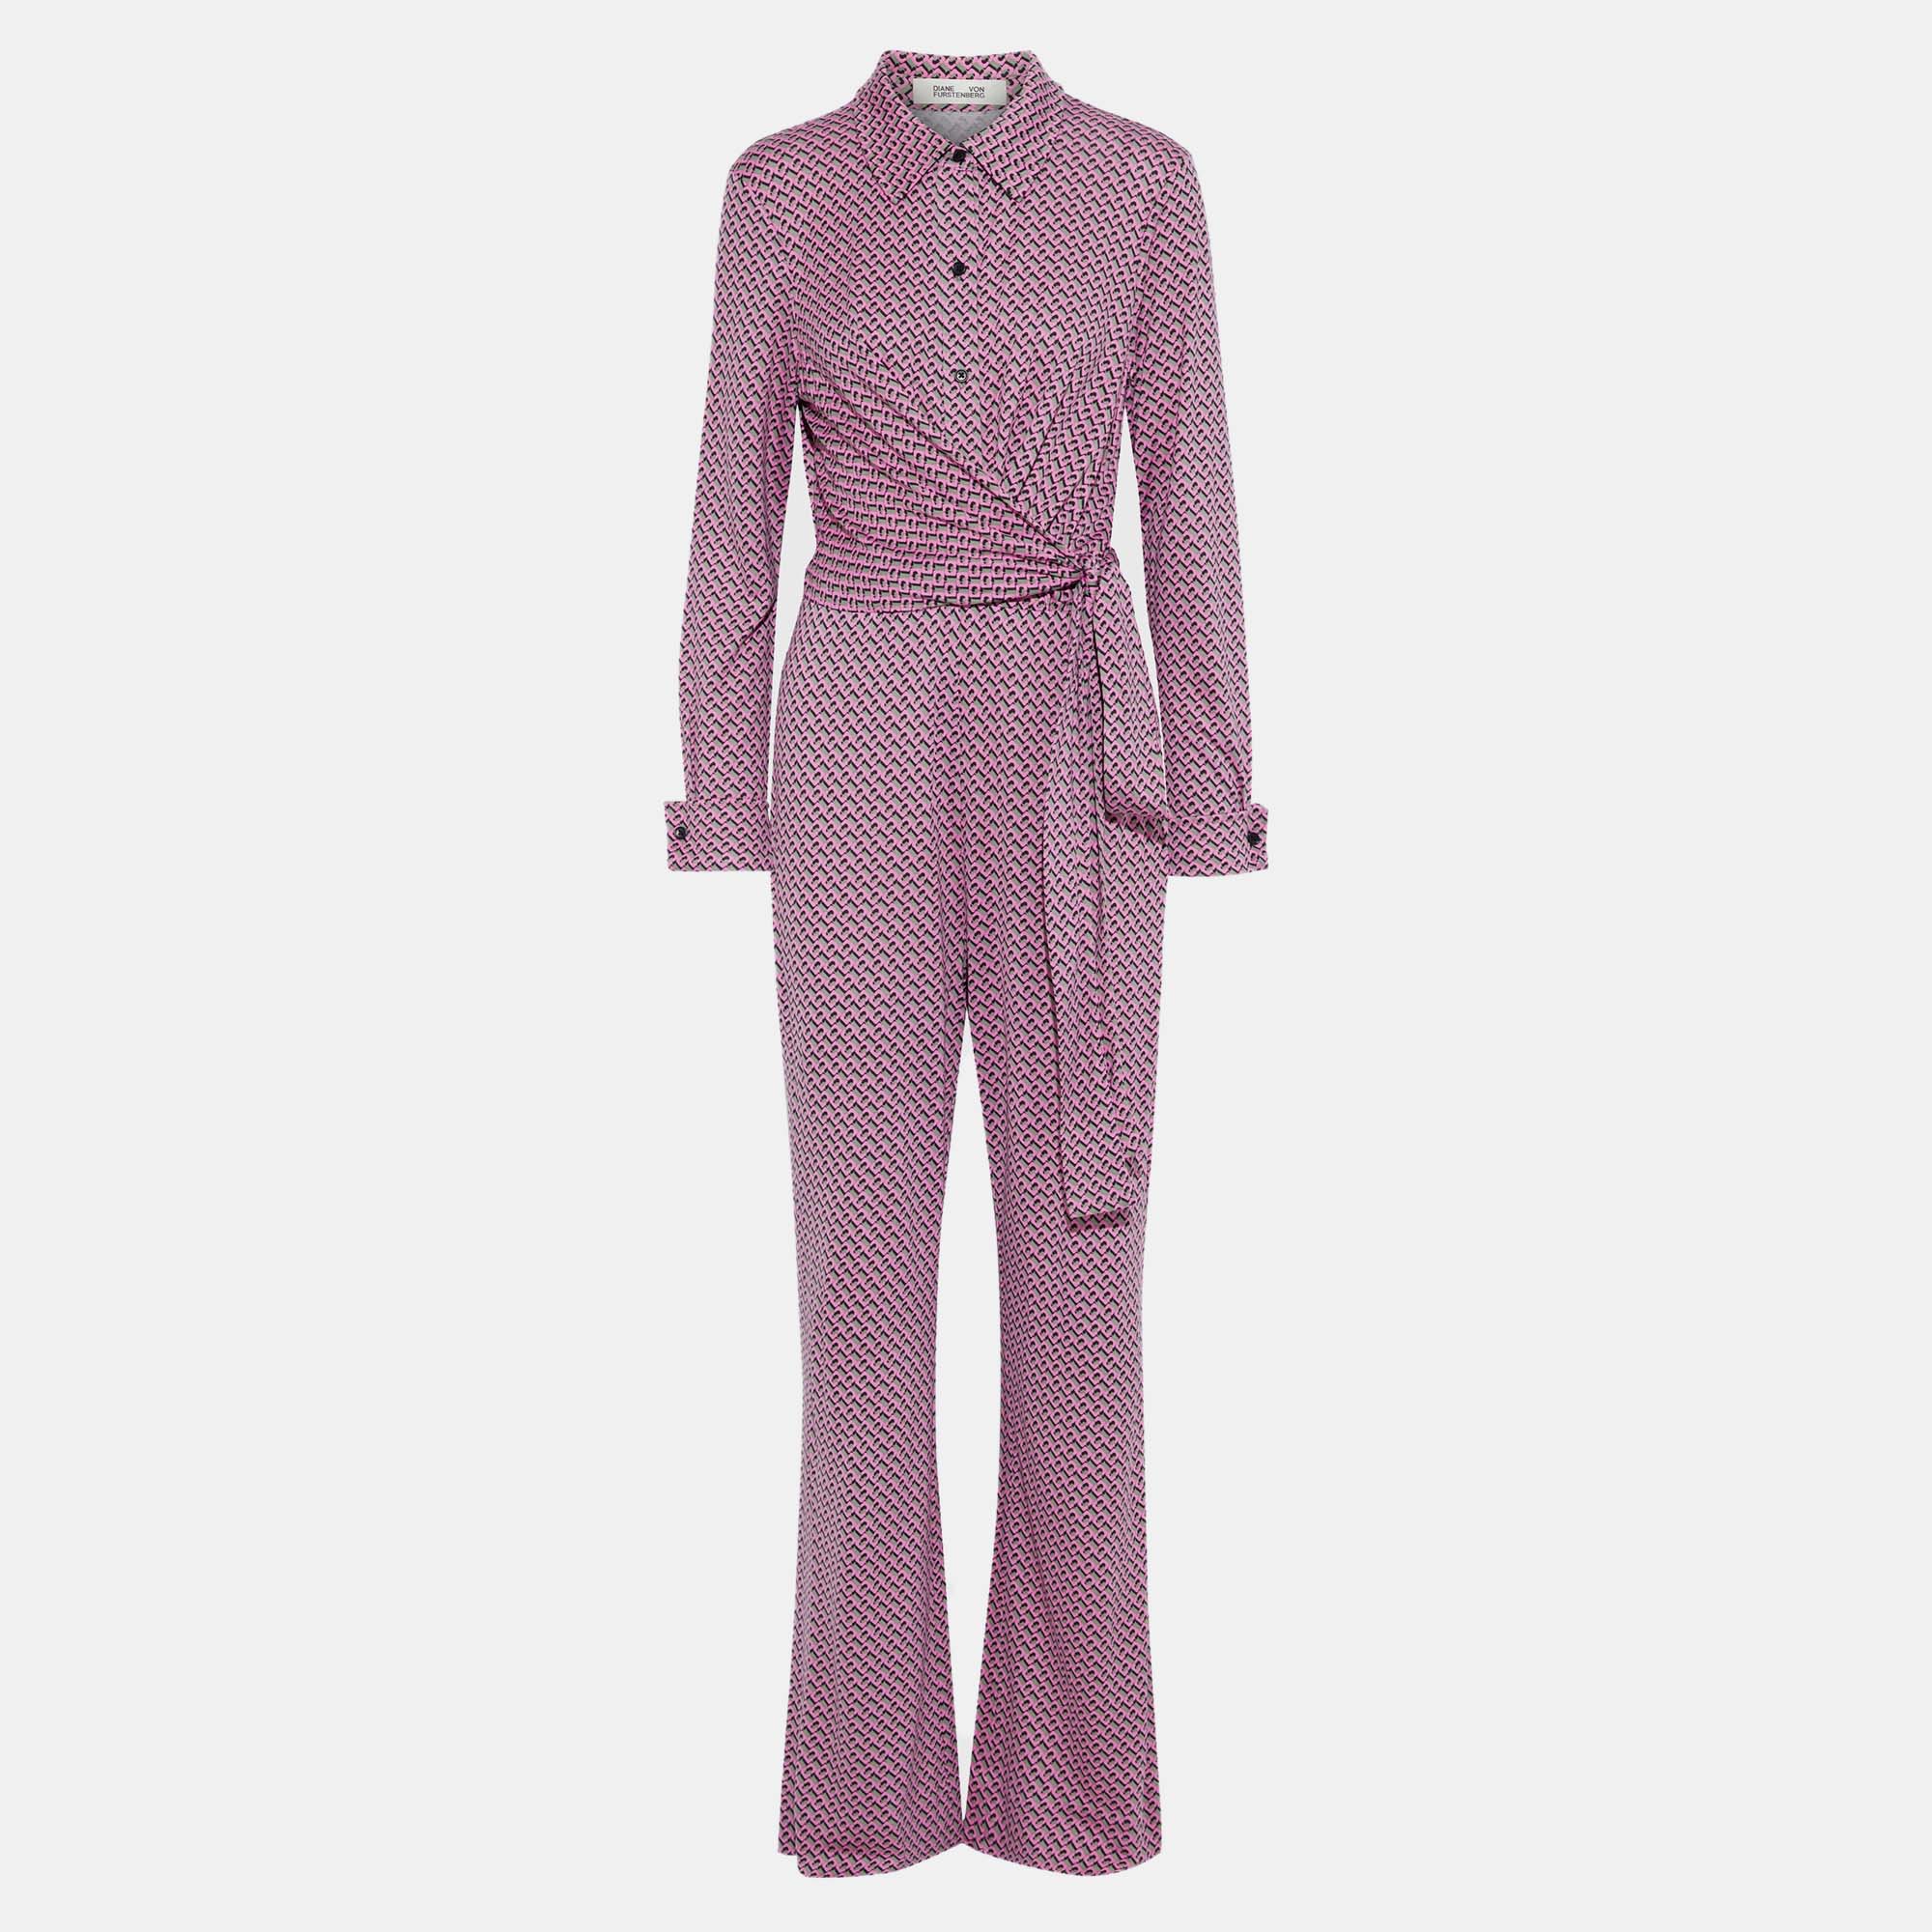 Diane von furstenberg green/pink printed jersey jumpsuit xs (us 2)